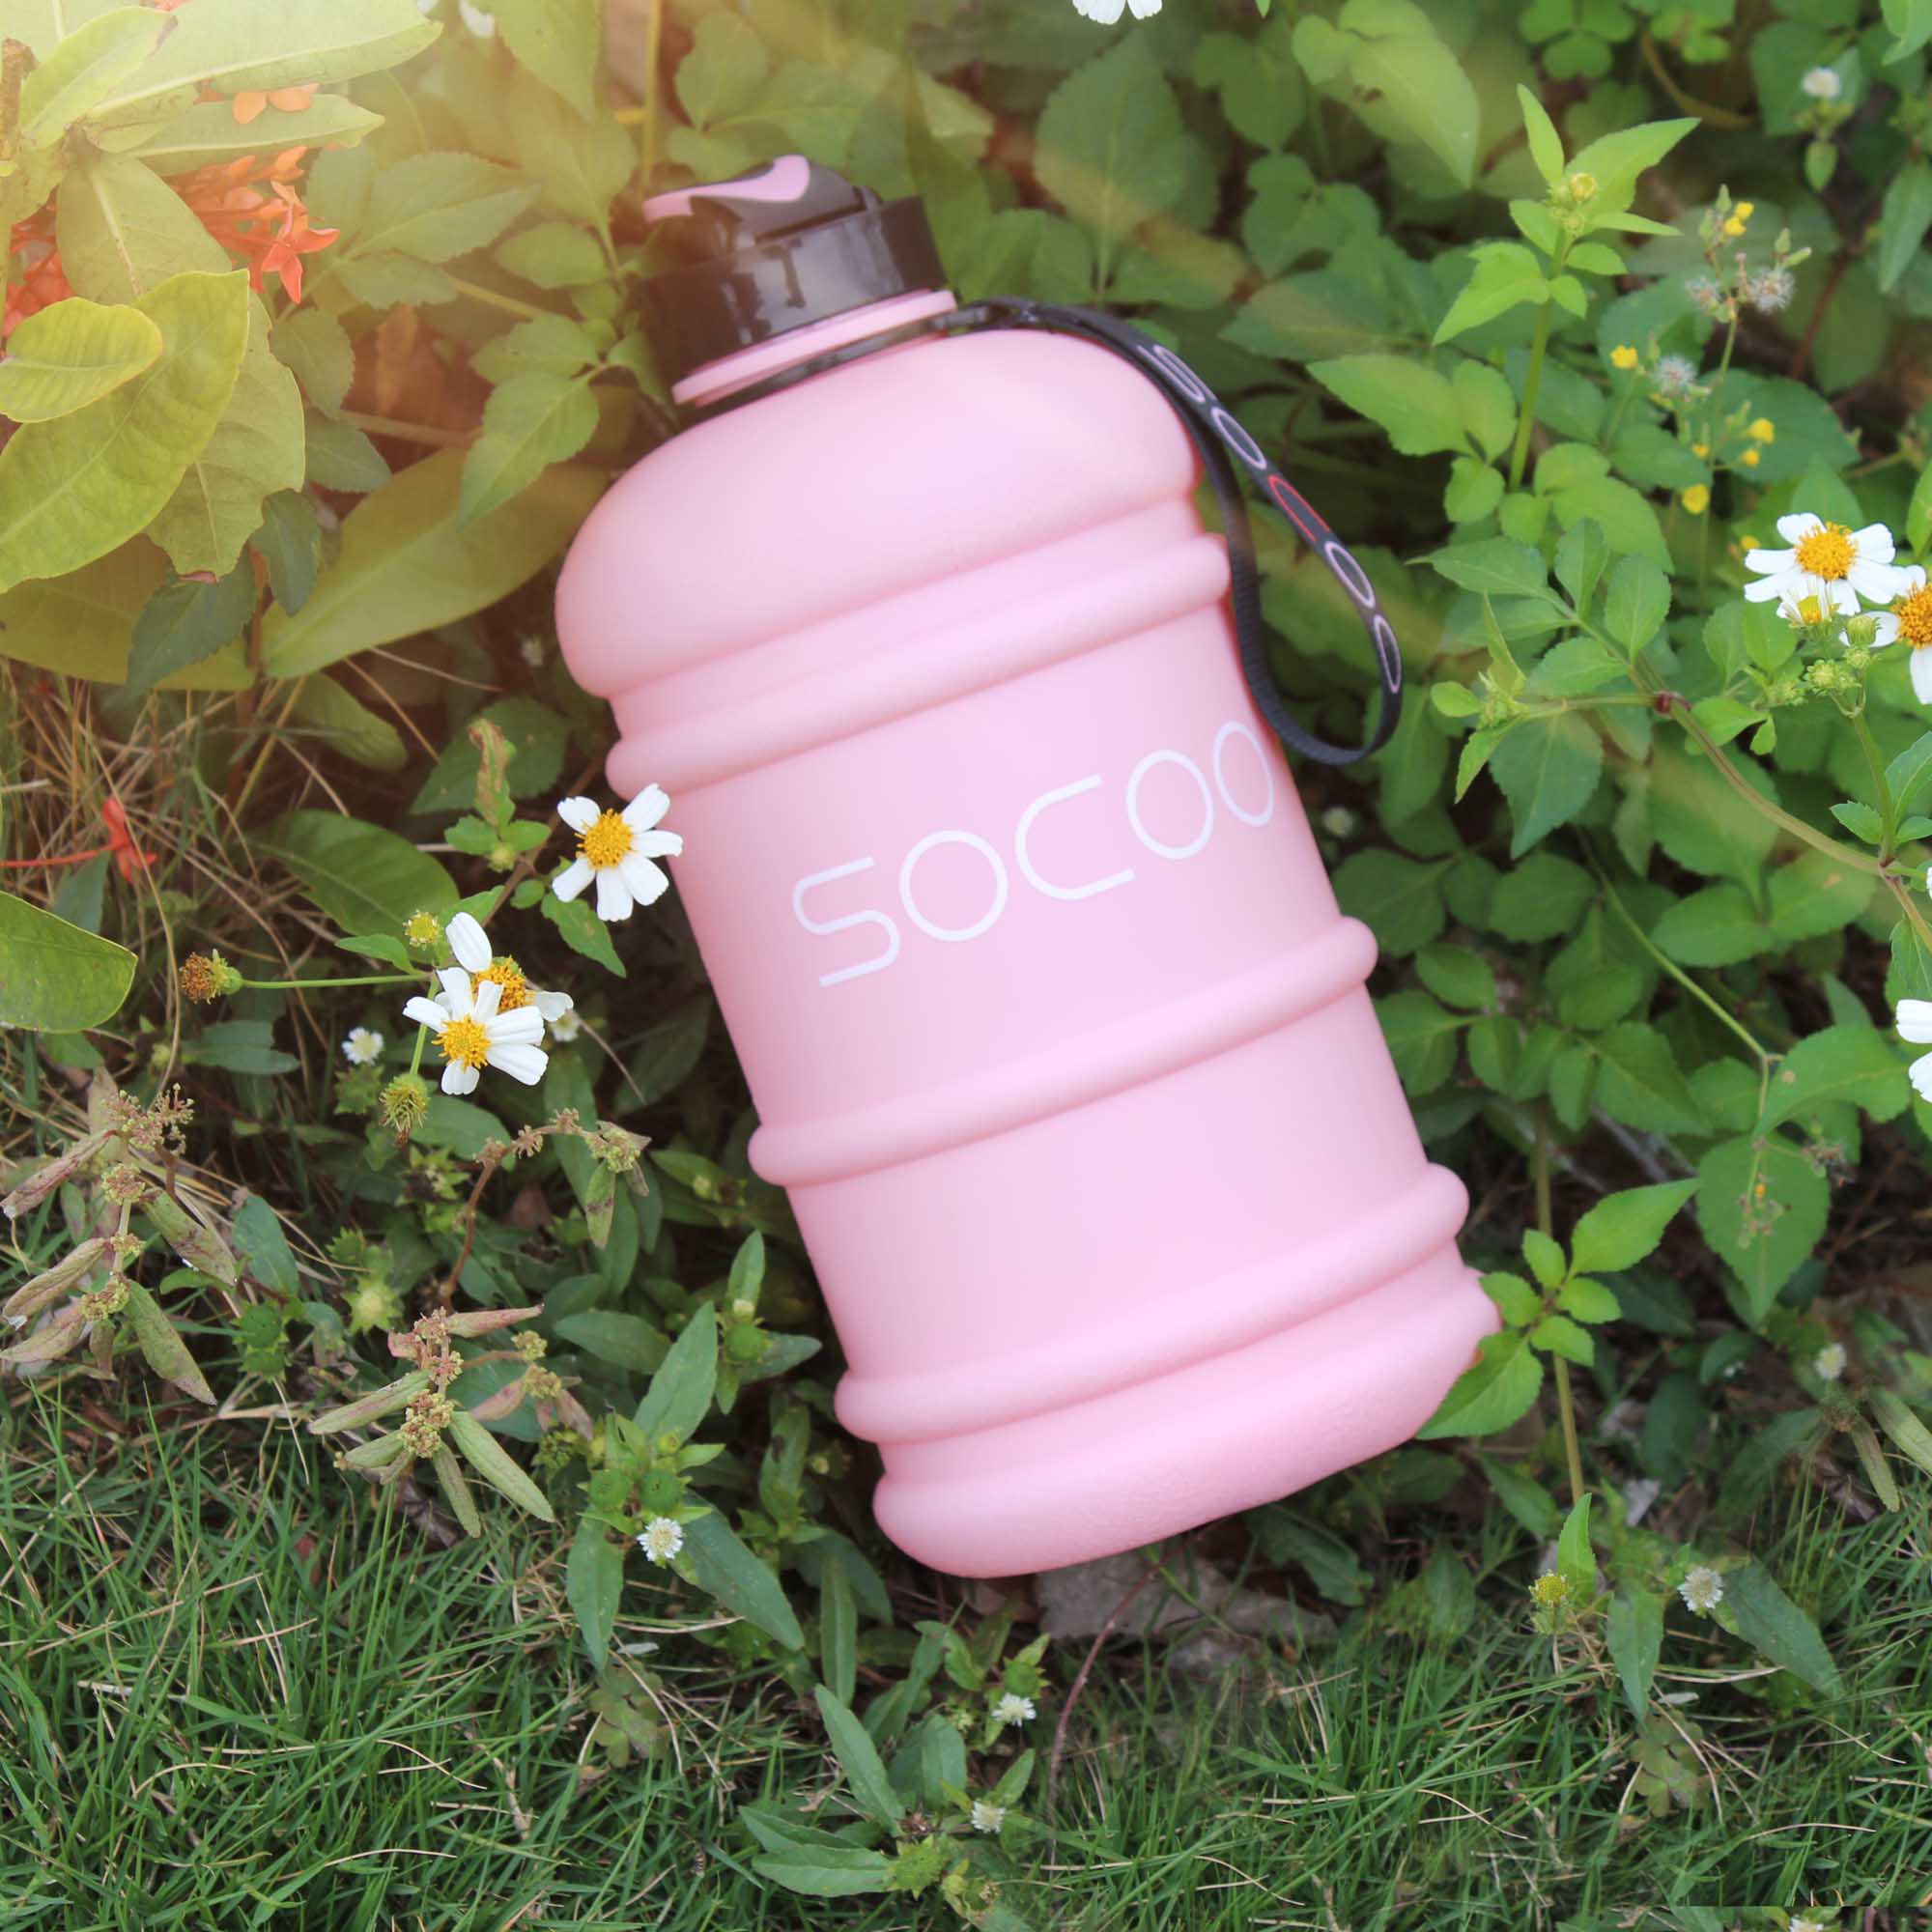 http://www.socoobottle.com/wp-content/uploads/2018/09/sports-water-bottle-pink.jpg